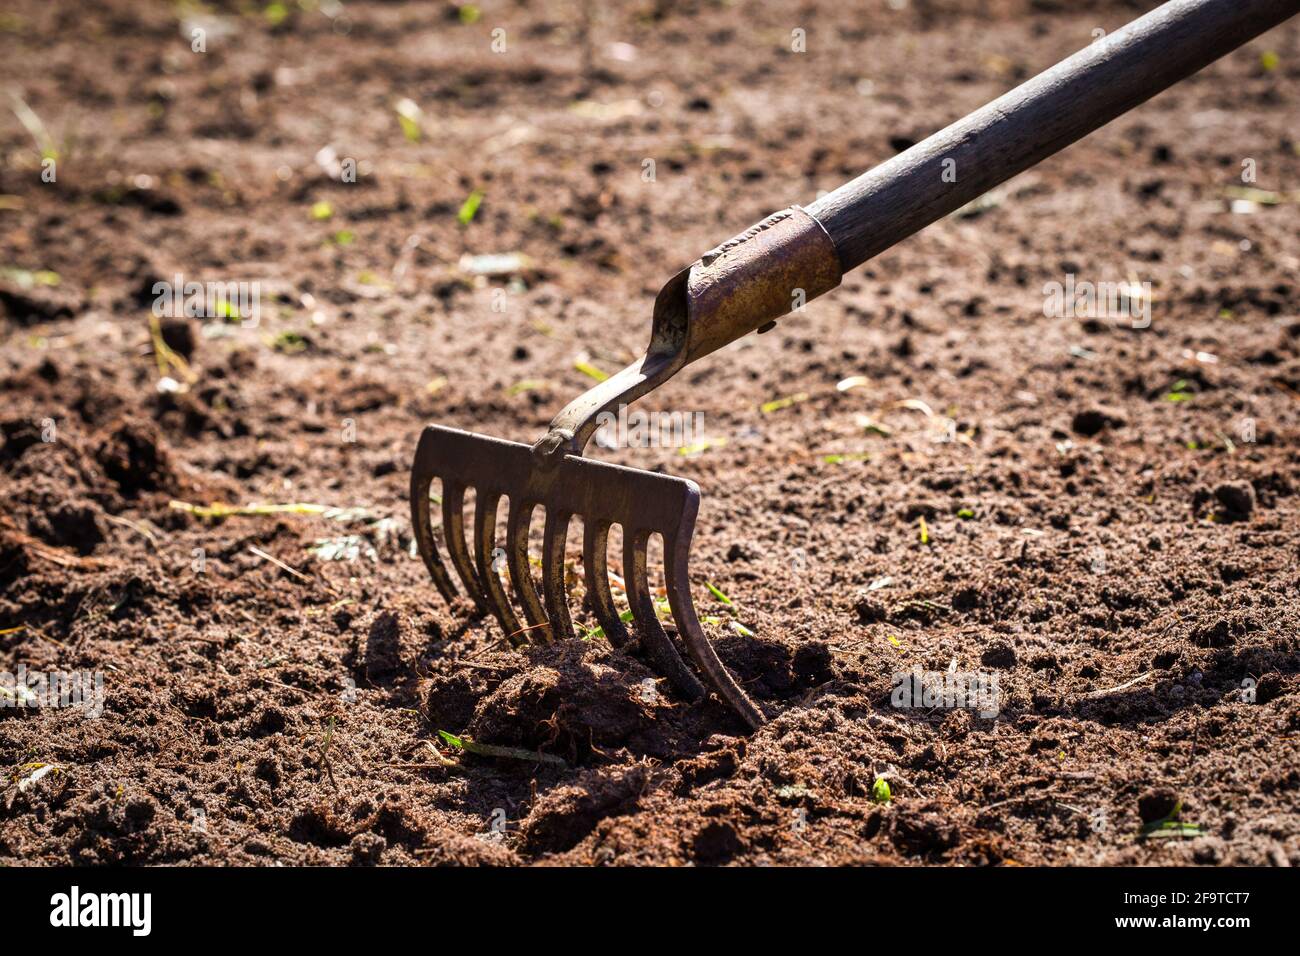 Gartenarbeit. Rechen im Boden. Graben rping Boden mit Rechen im Garten,  Gartenarbeit, Landwirtschaft, Aussaat Konzept Stockfotografie - Alamy